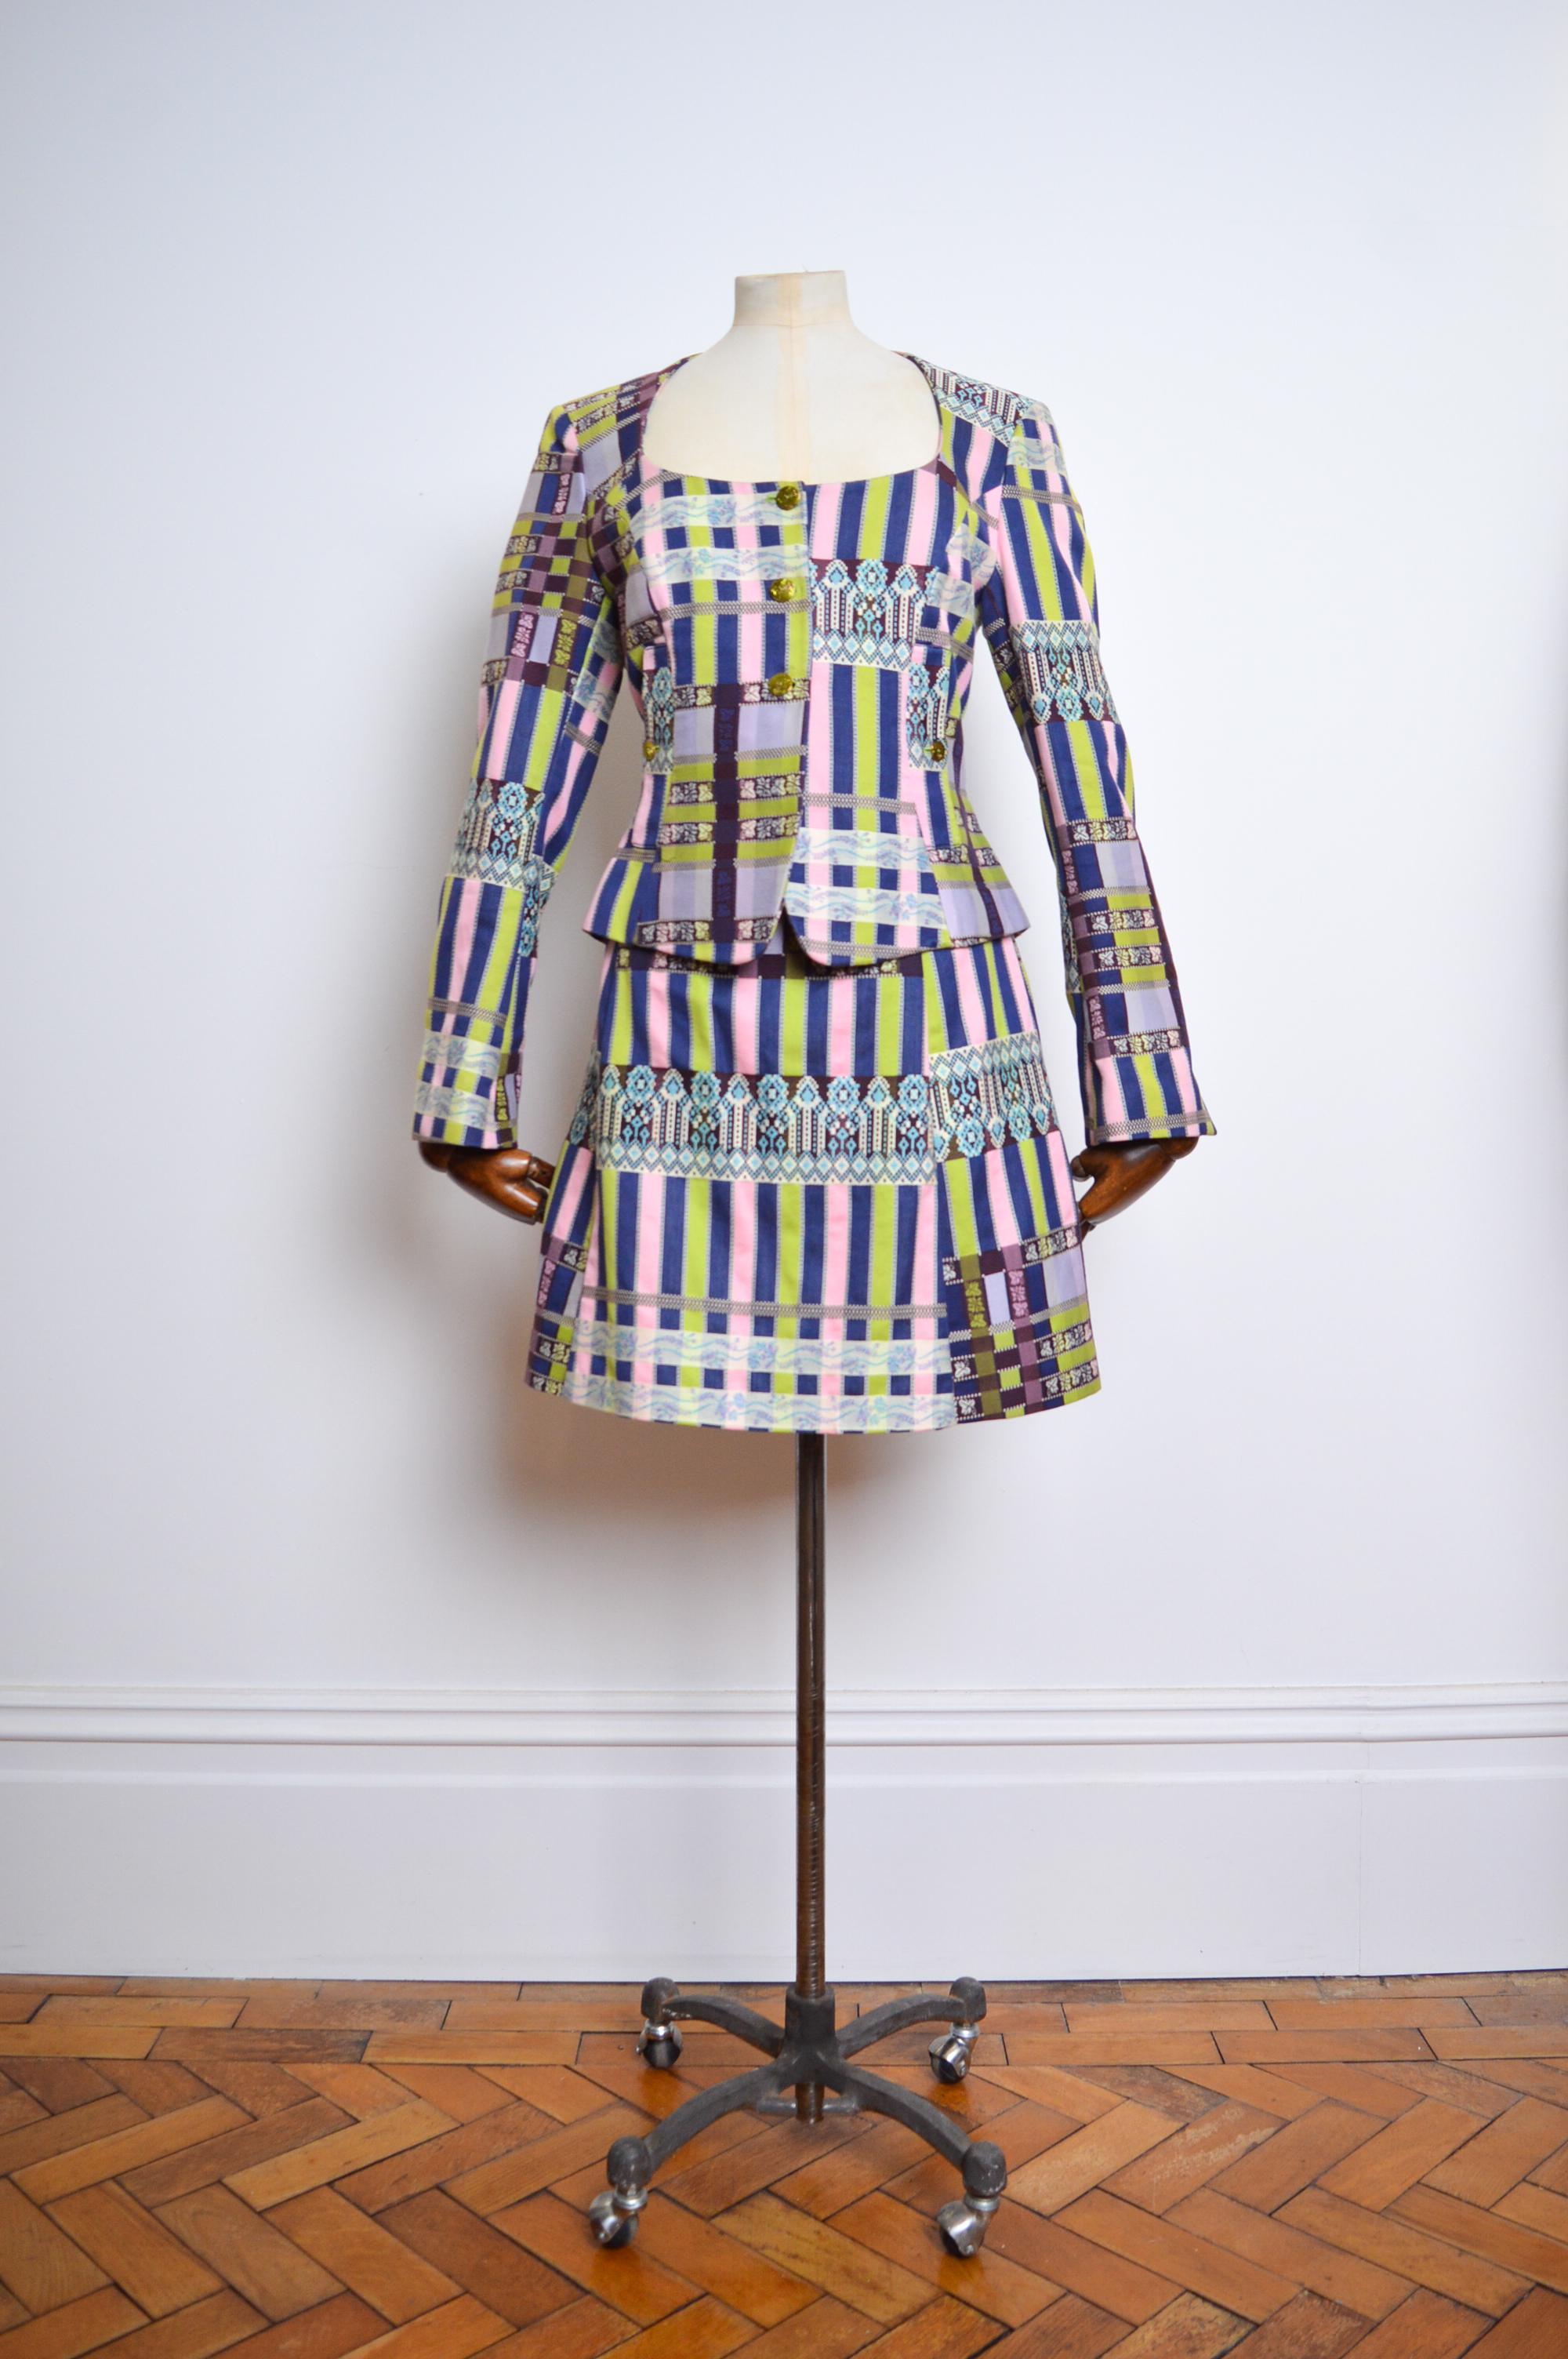 Fabulous 1990's Vintage Boucle Jacke und Minirock Set von Christian Lacroix, in einem herrlichen 'LaCroix' Unterschrift Material aus lila, grün und rosa Jacquard gebaut !

Diese göttliche Jacke hat einen taillierten Schnitt, der dem Kleidungsstück